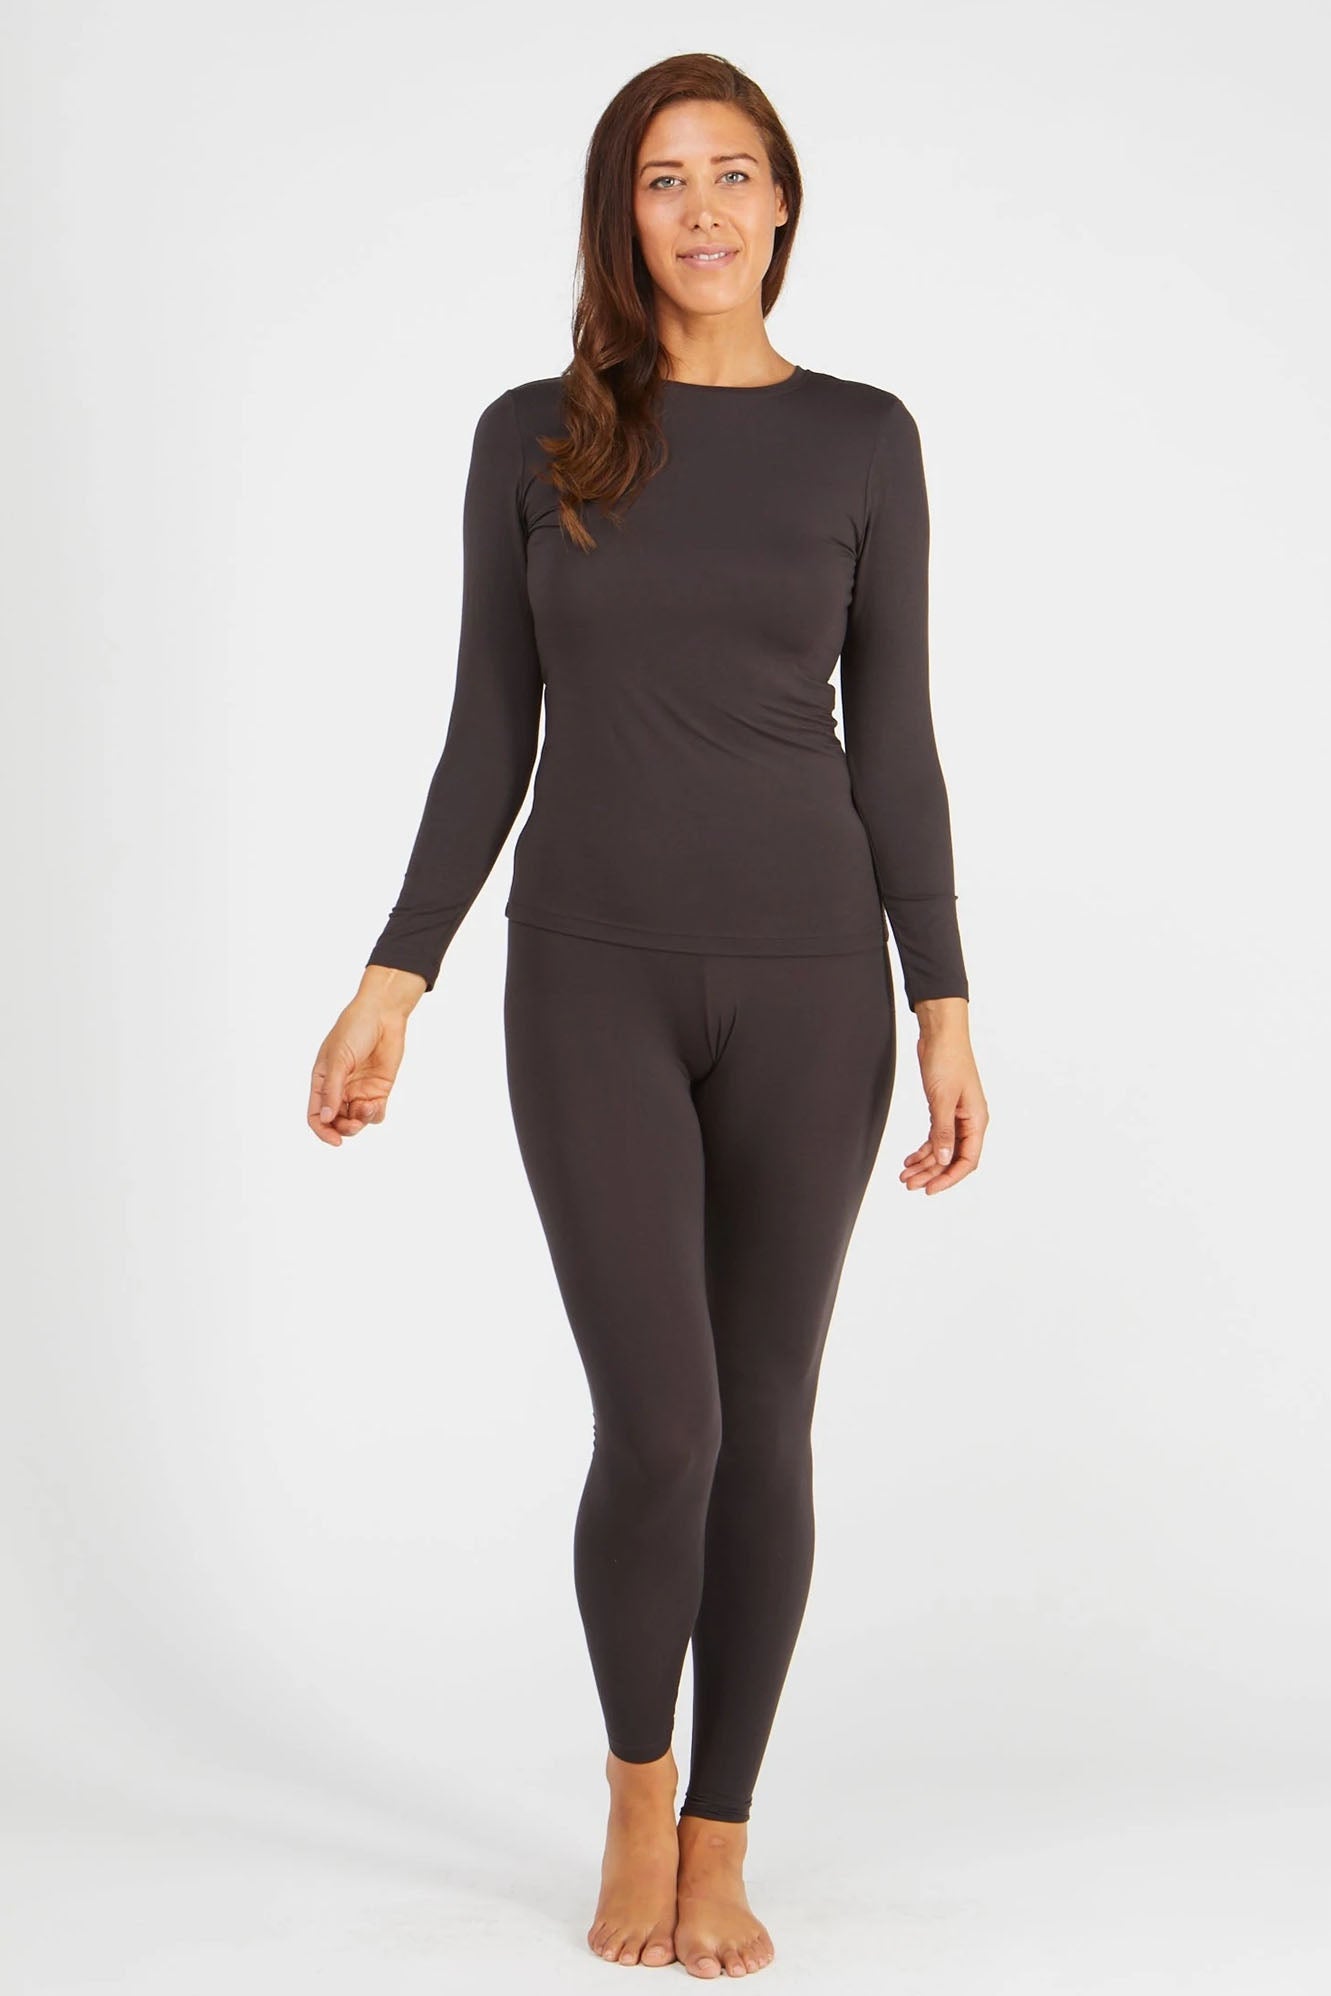 Woman wearing Tani 89118 leggings in licorice